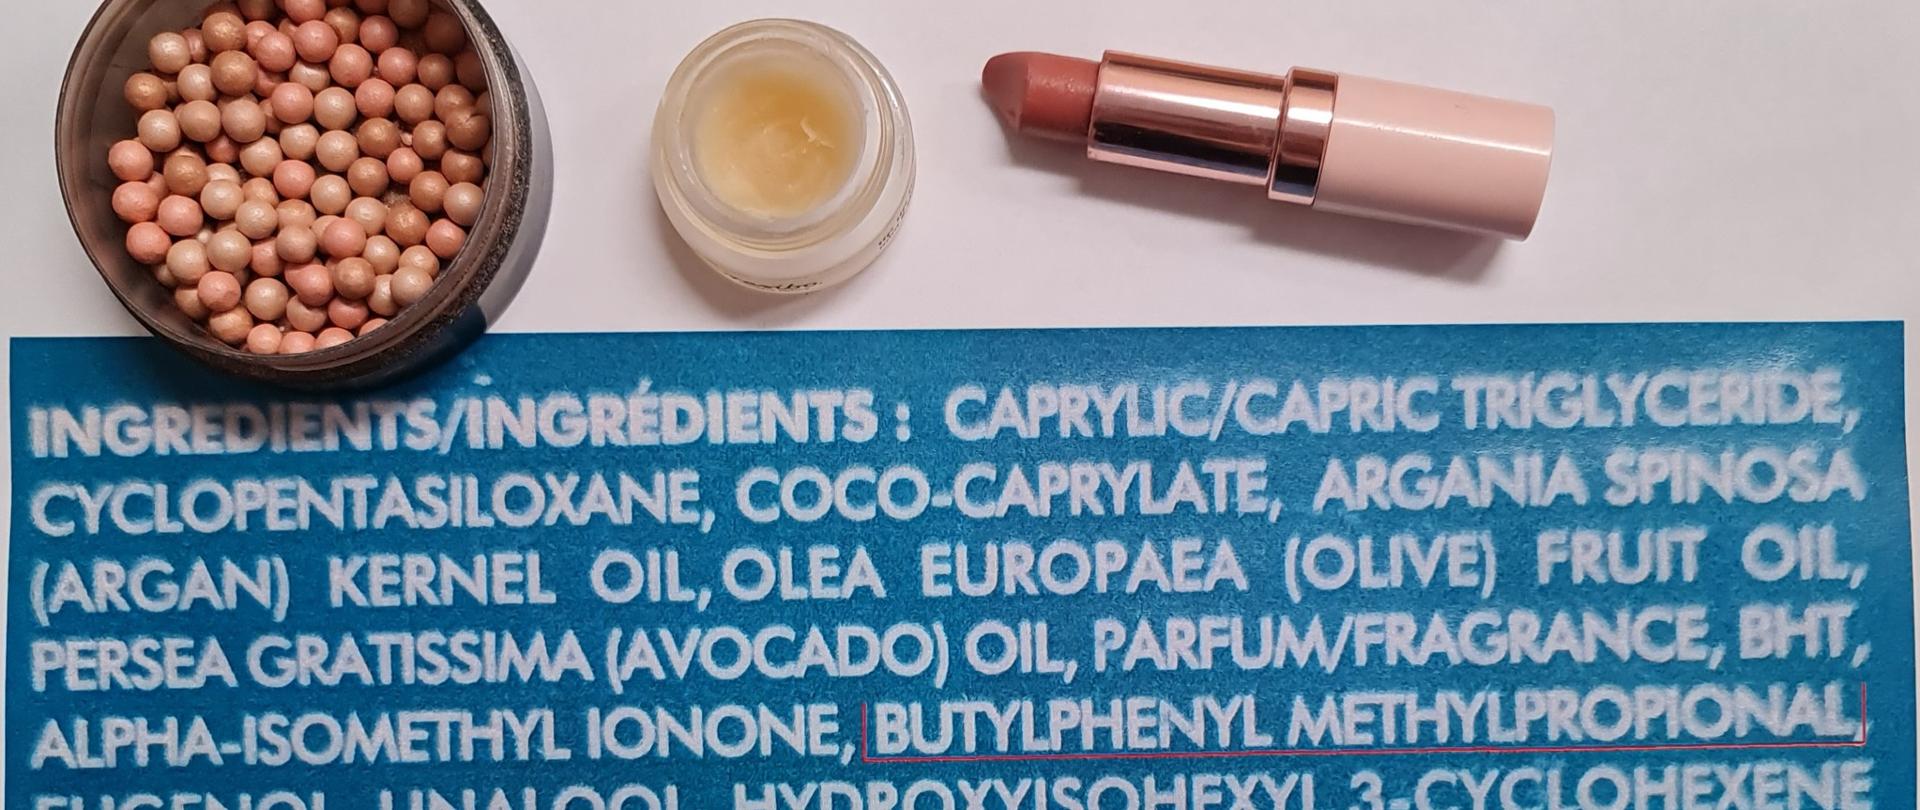 Zdjęcie przedstawia kosmetyki na tle etykiety produktu wyszczególniającej składniki. Wśród nich jest Butylphenyl Methylpropional, czyli LILIAL.